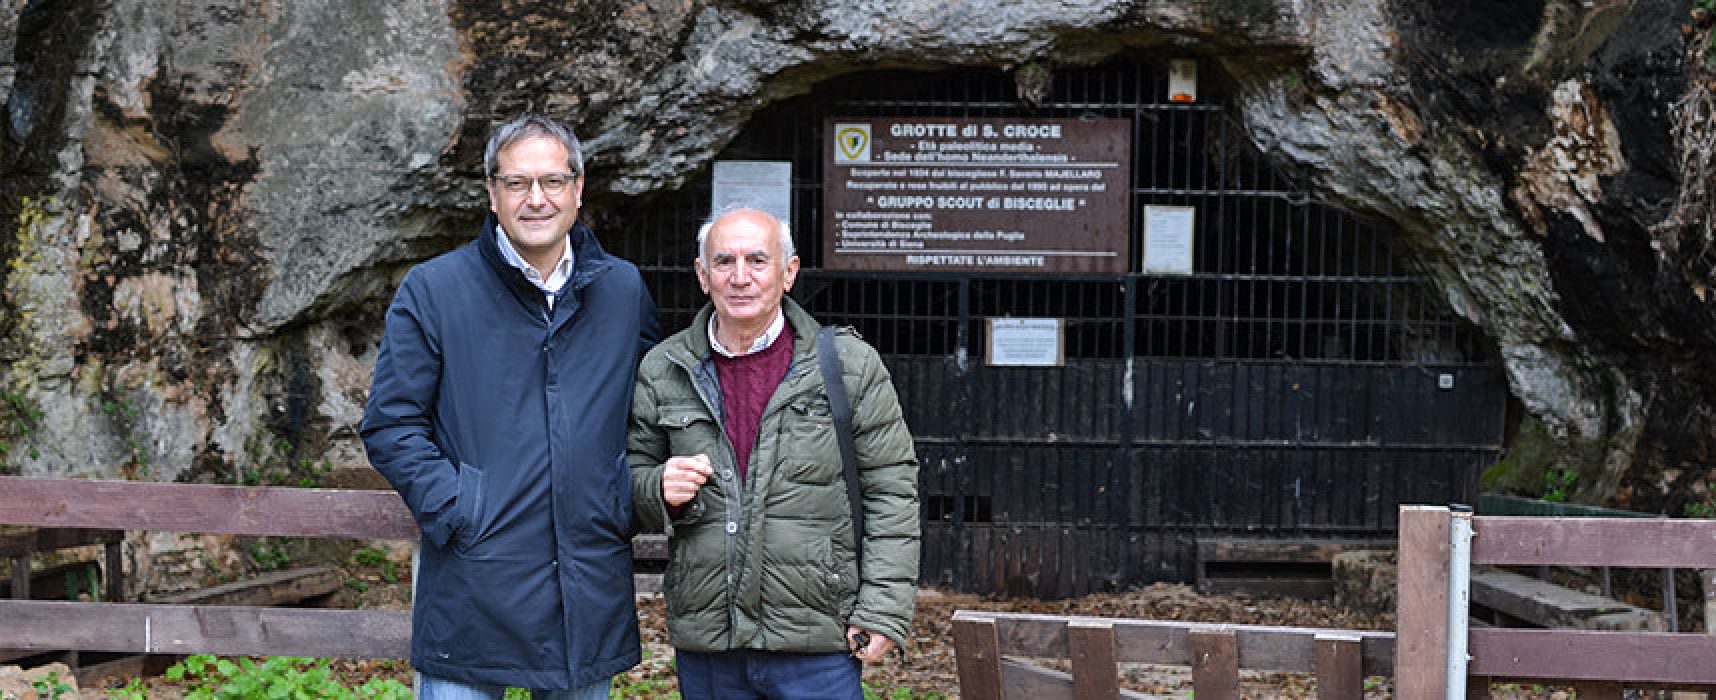 Il Sindaco Angarano revoca l’ordinanza di chiusura delle Grotte di Santa Croce